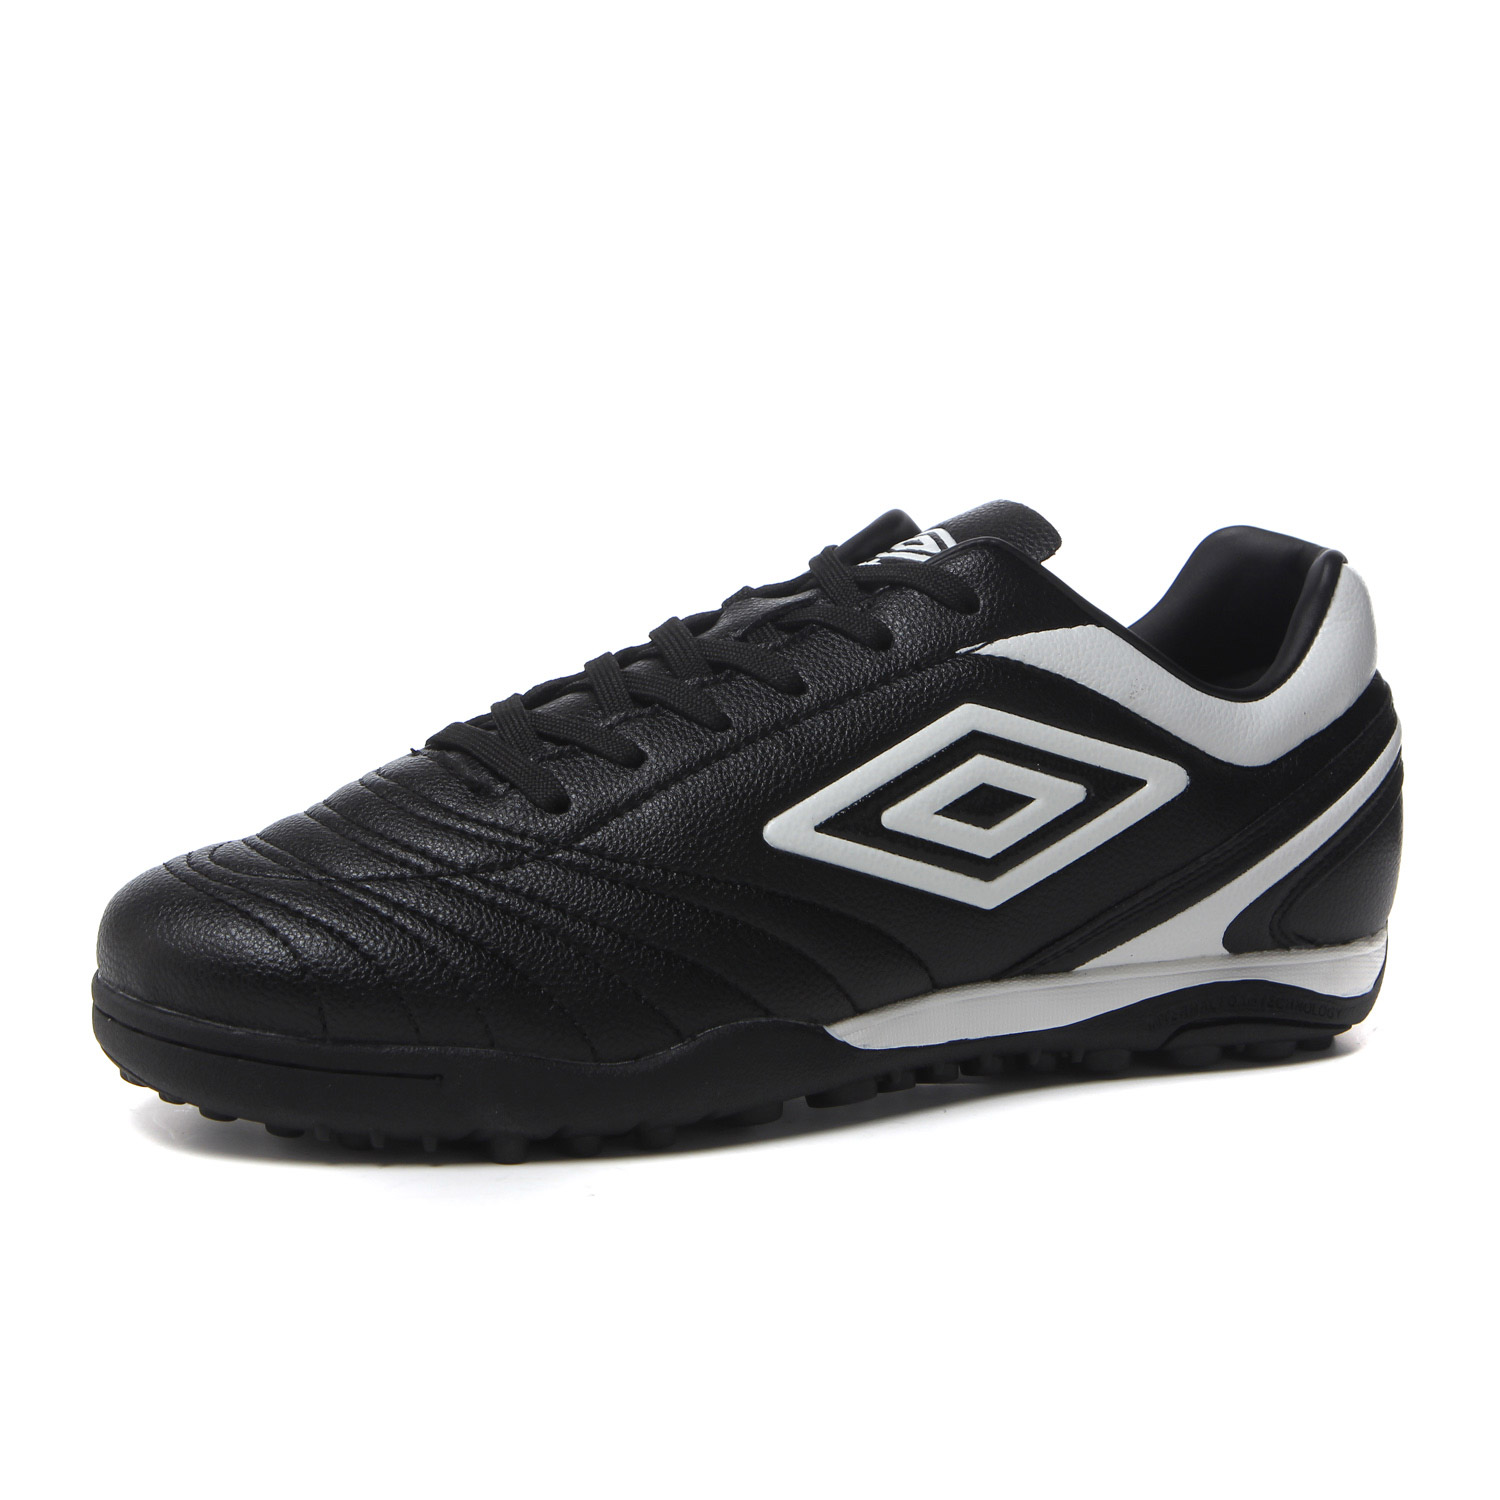 Chaussures de football UMBRO en PU - Ref 2443280 Image 3